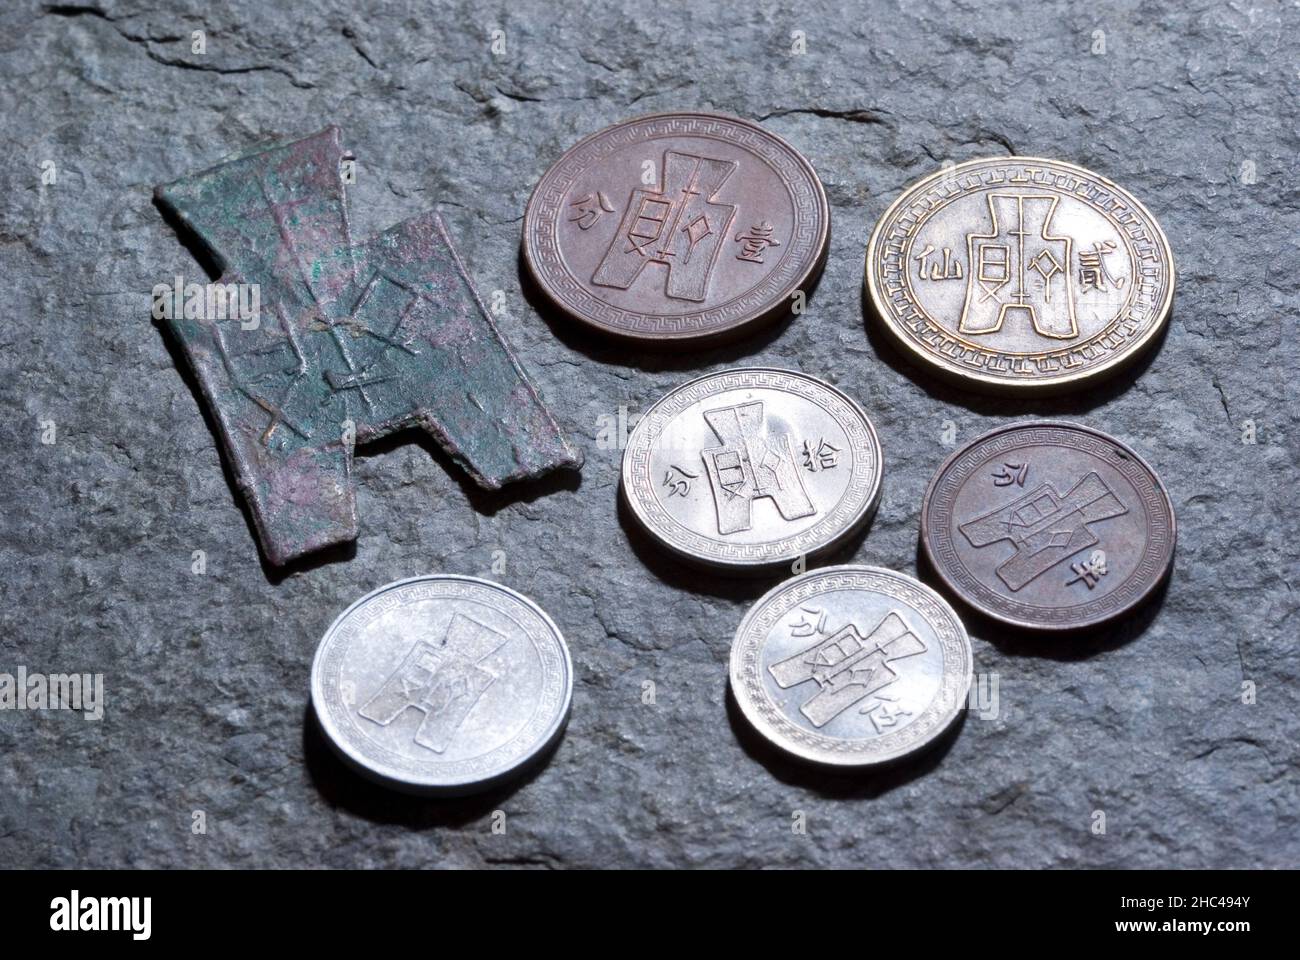 Pièces de monnaie de la République de Chine et pièces de monnaie de la Spade des États de guerre Banque D'Images